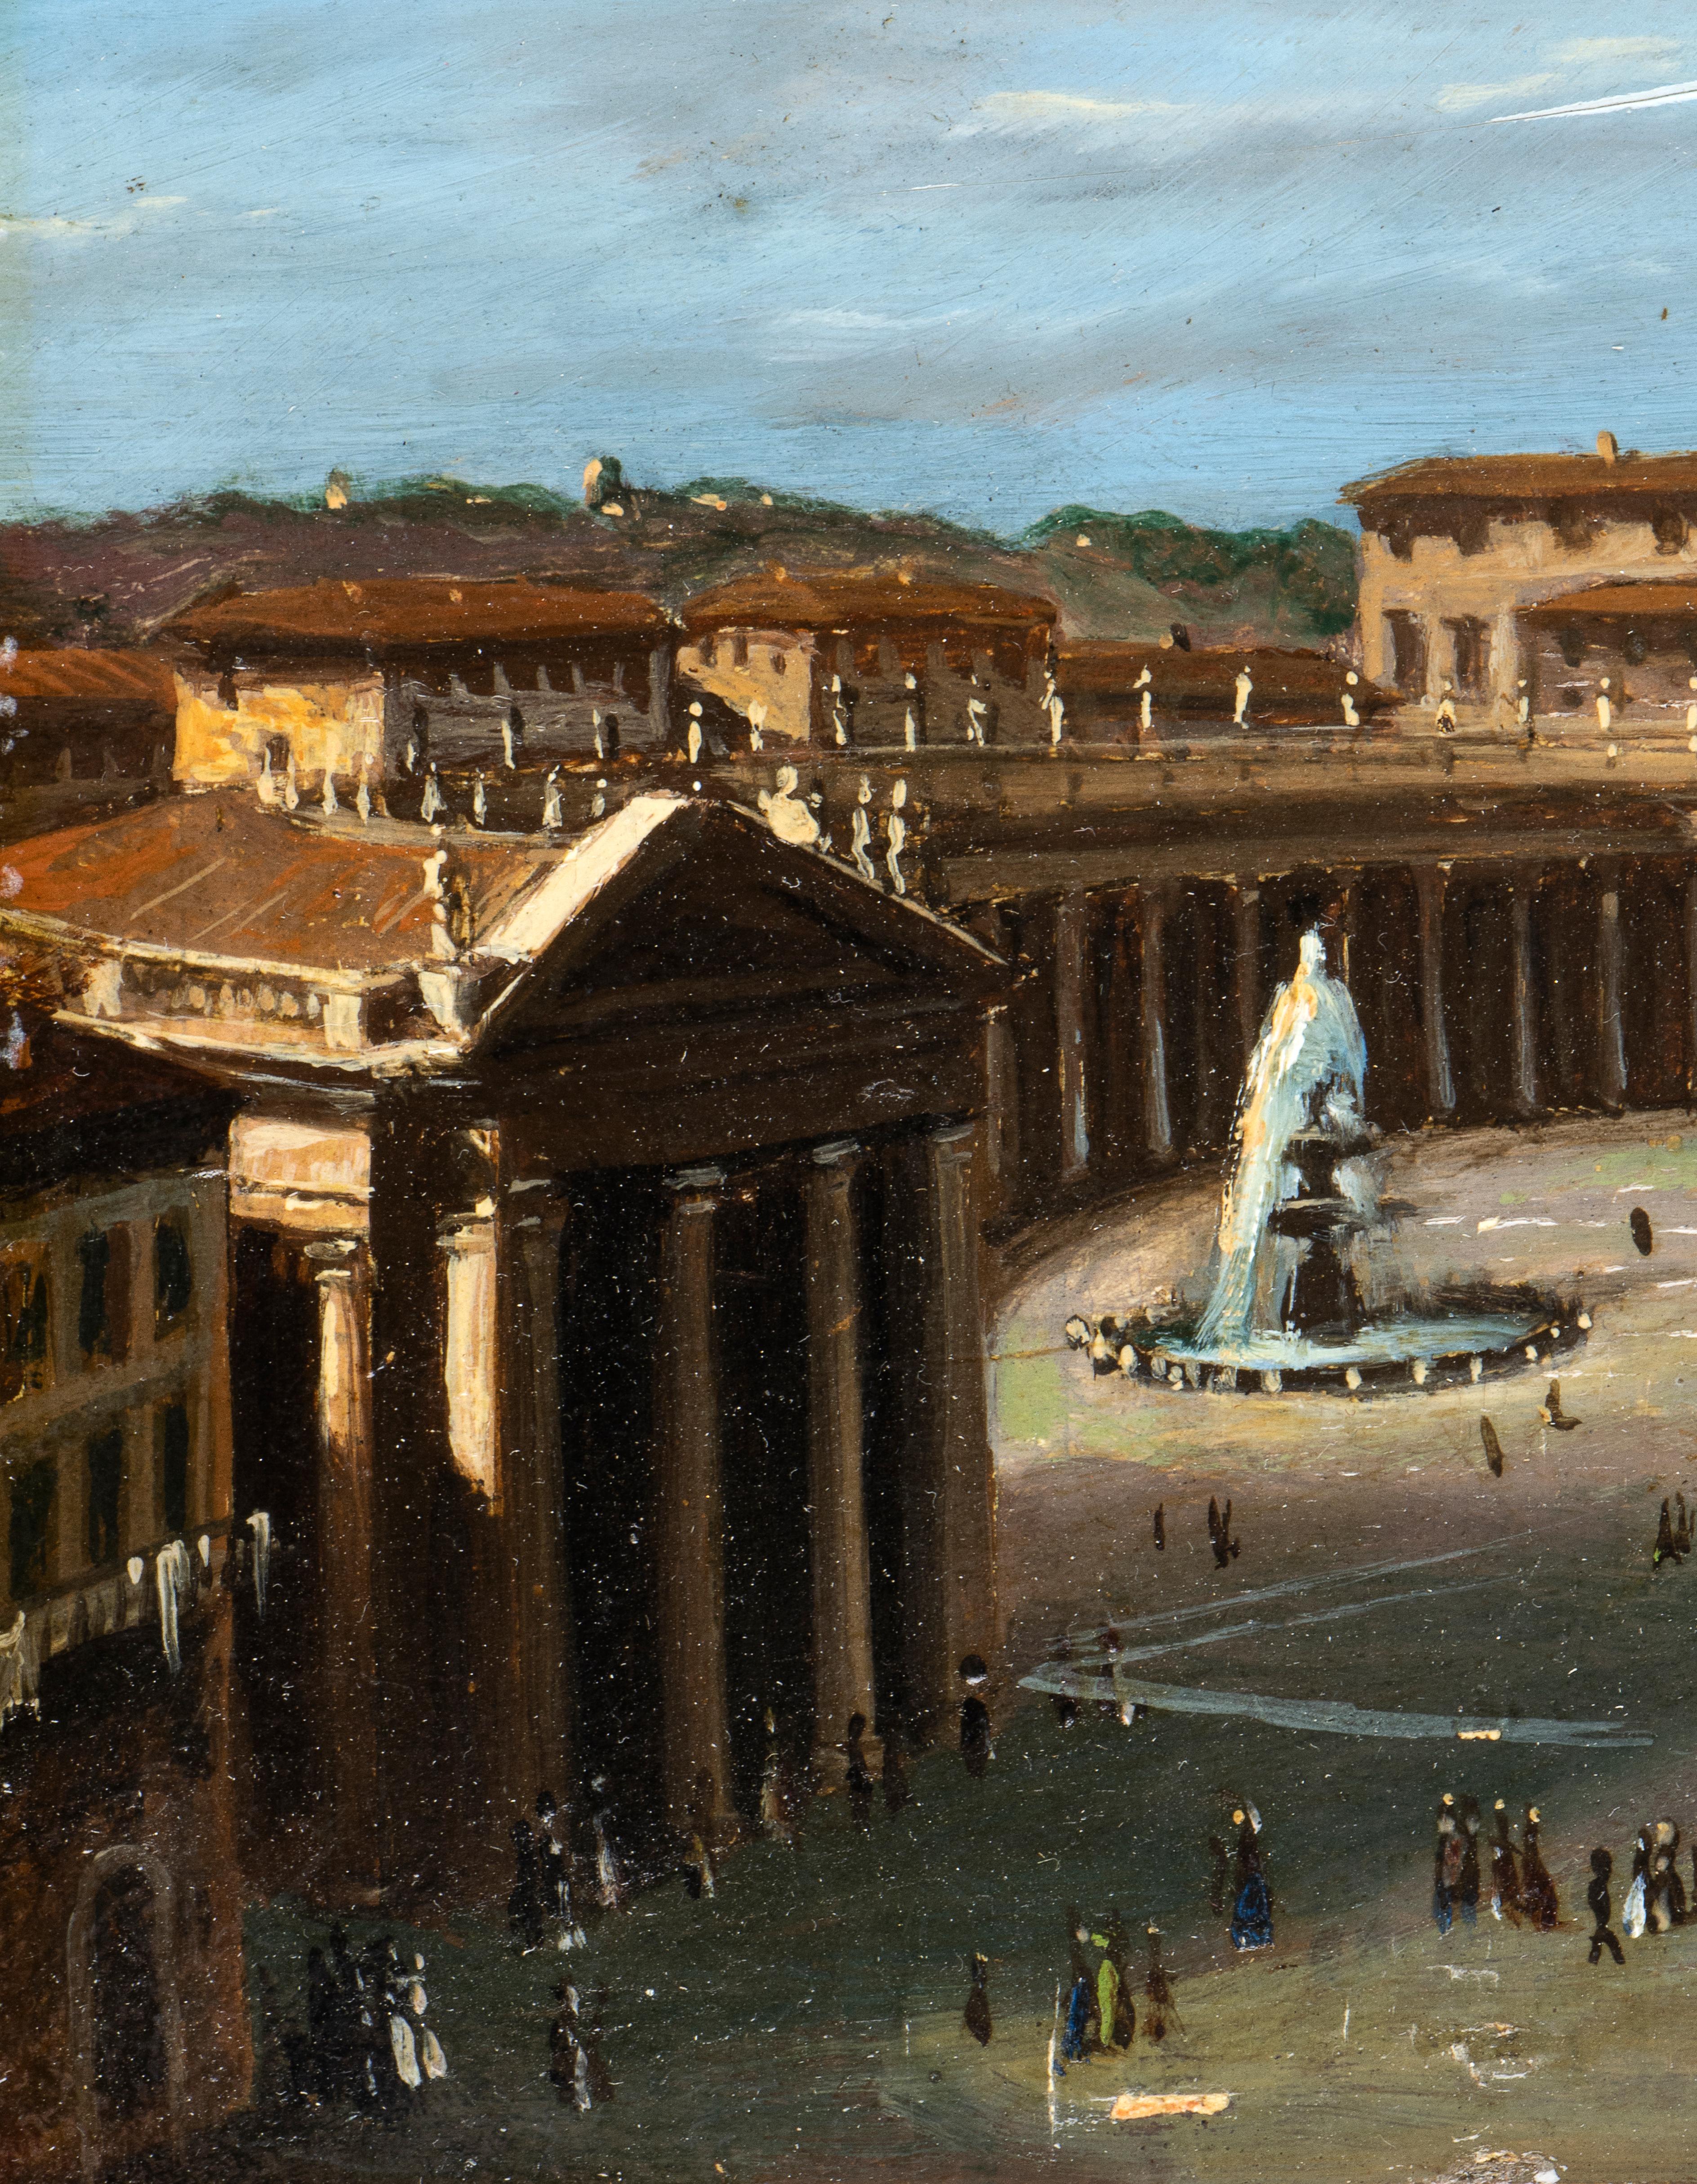 Une vue impressionnante de la basilique St Peters et de la place avec les  l'obélisque et la colonnade, peints à partir de la  Spina di Borgo.
Après la construction voulue par le pape Alexander VI à l'imminence du jubilé de 1500 de la Via